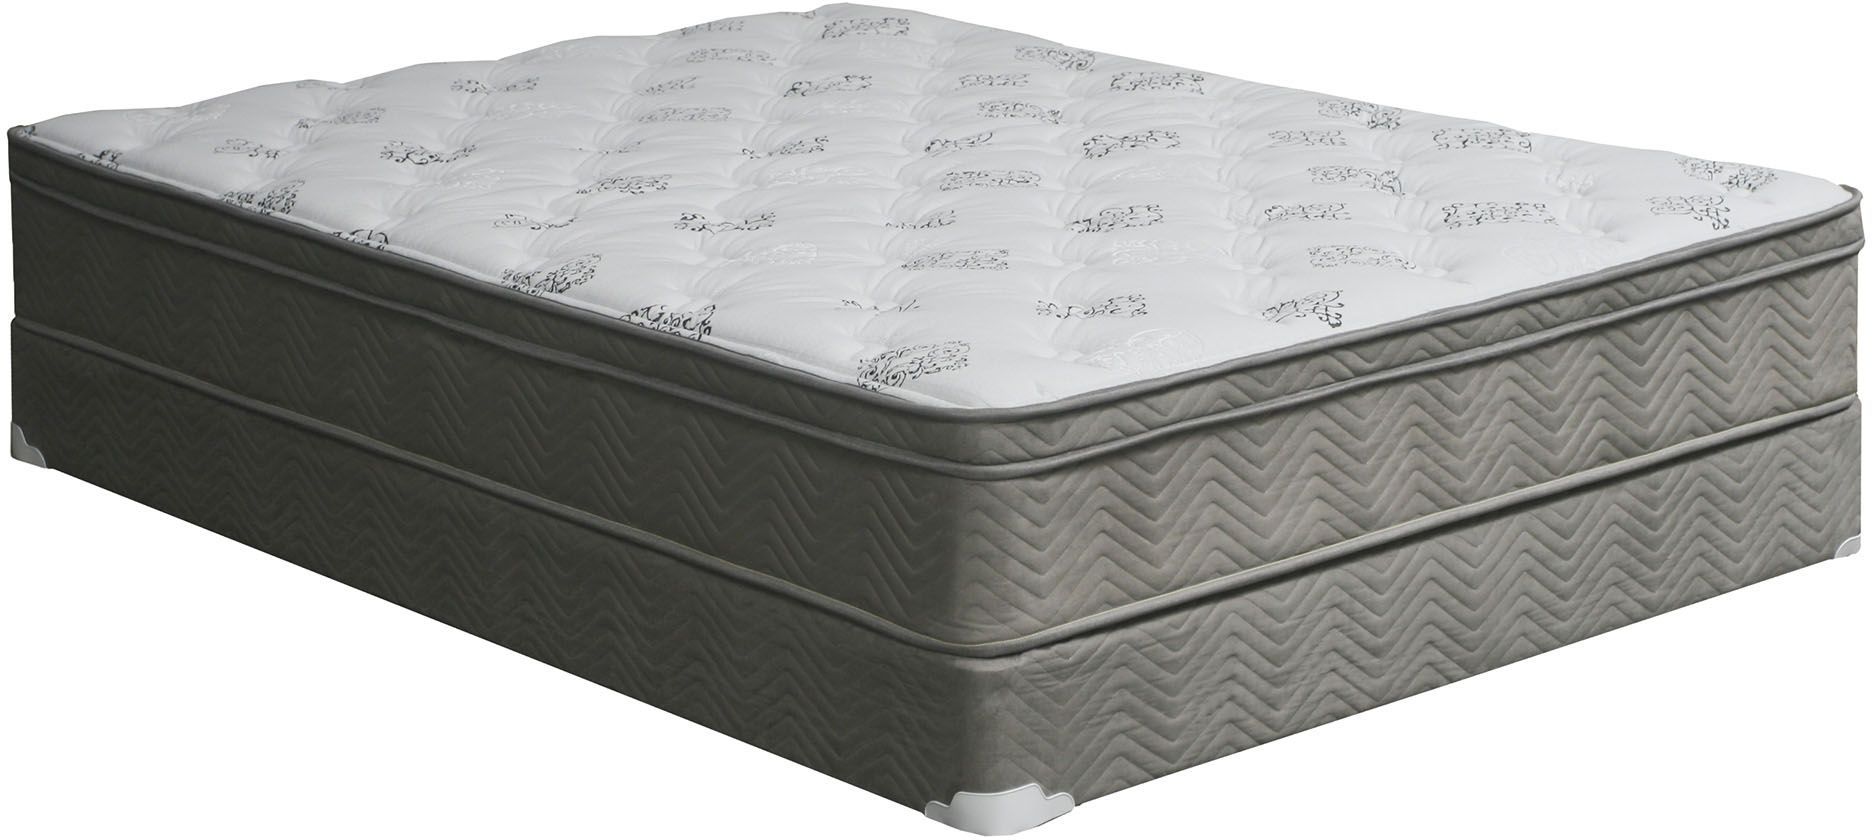 wabash euro top queen mattress